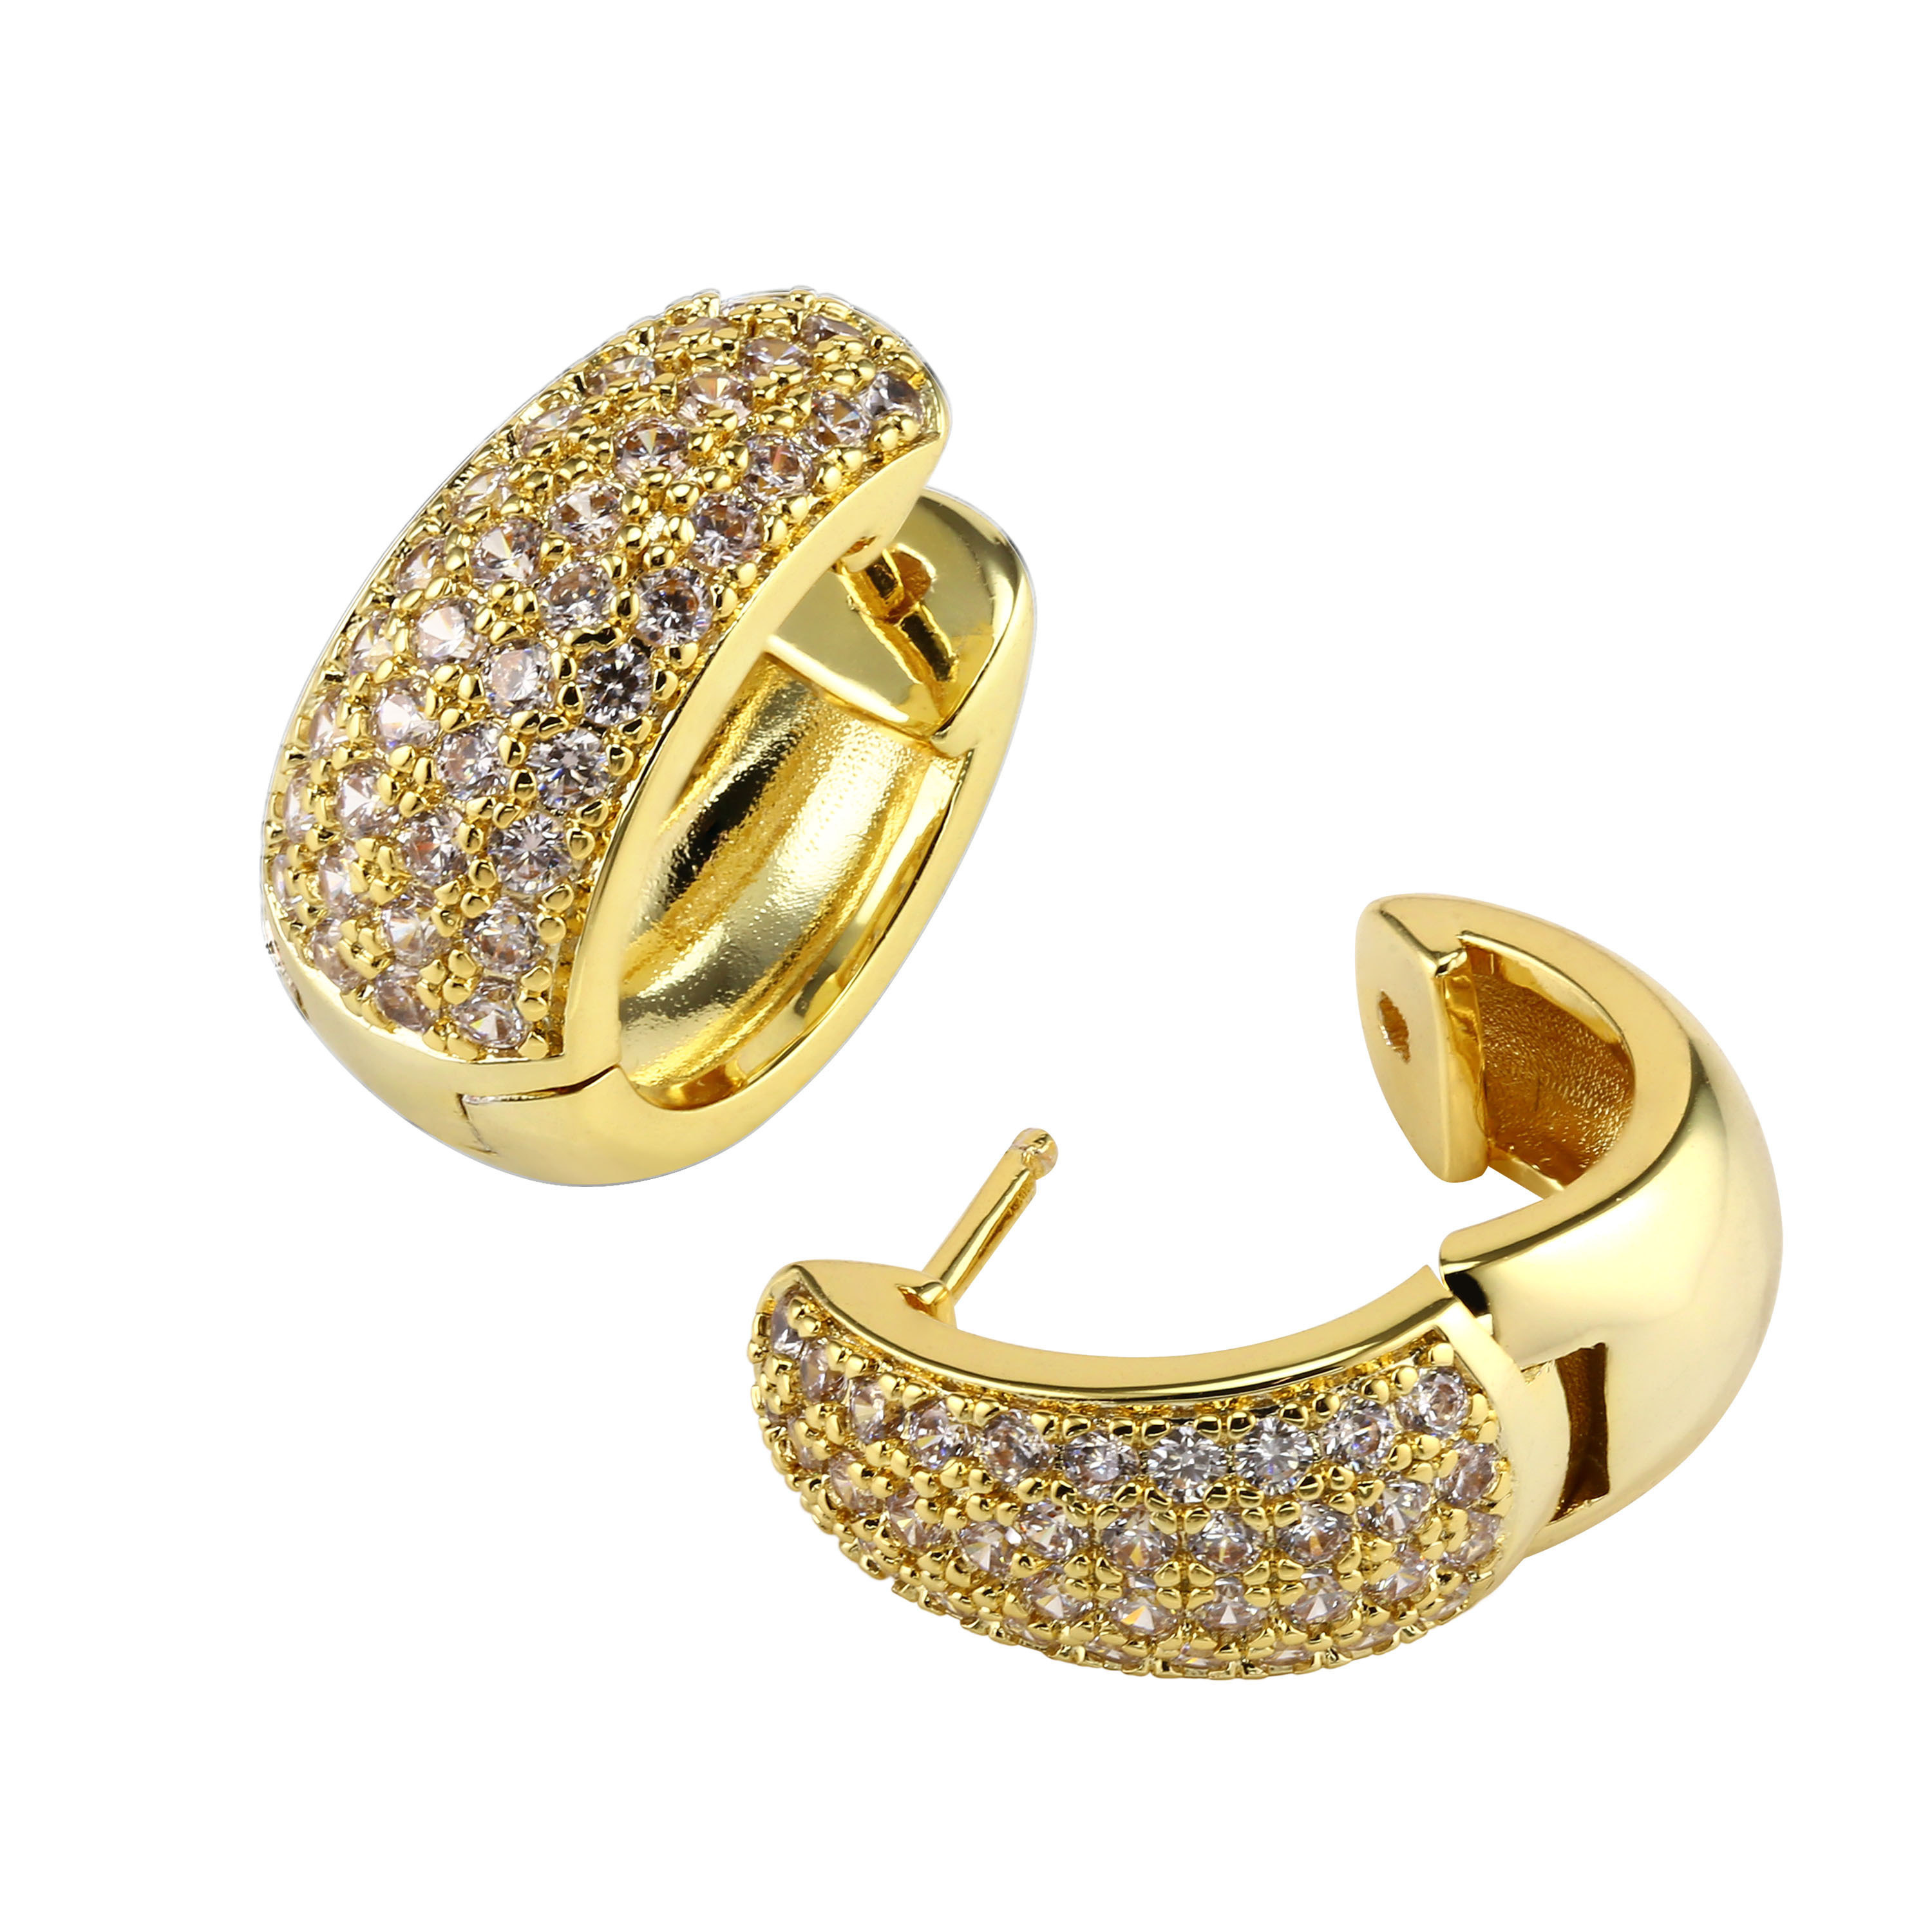 14k Gold hoop earrings from Macy's for Sale in San Diego, CA - OfferUp